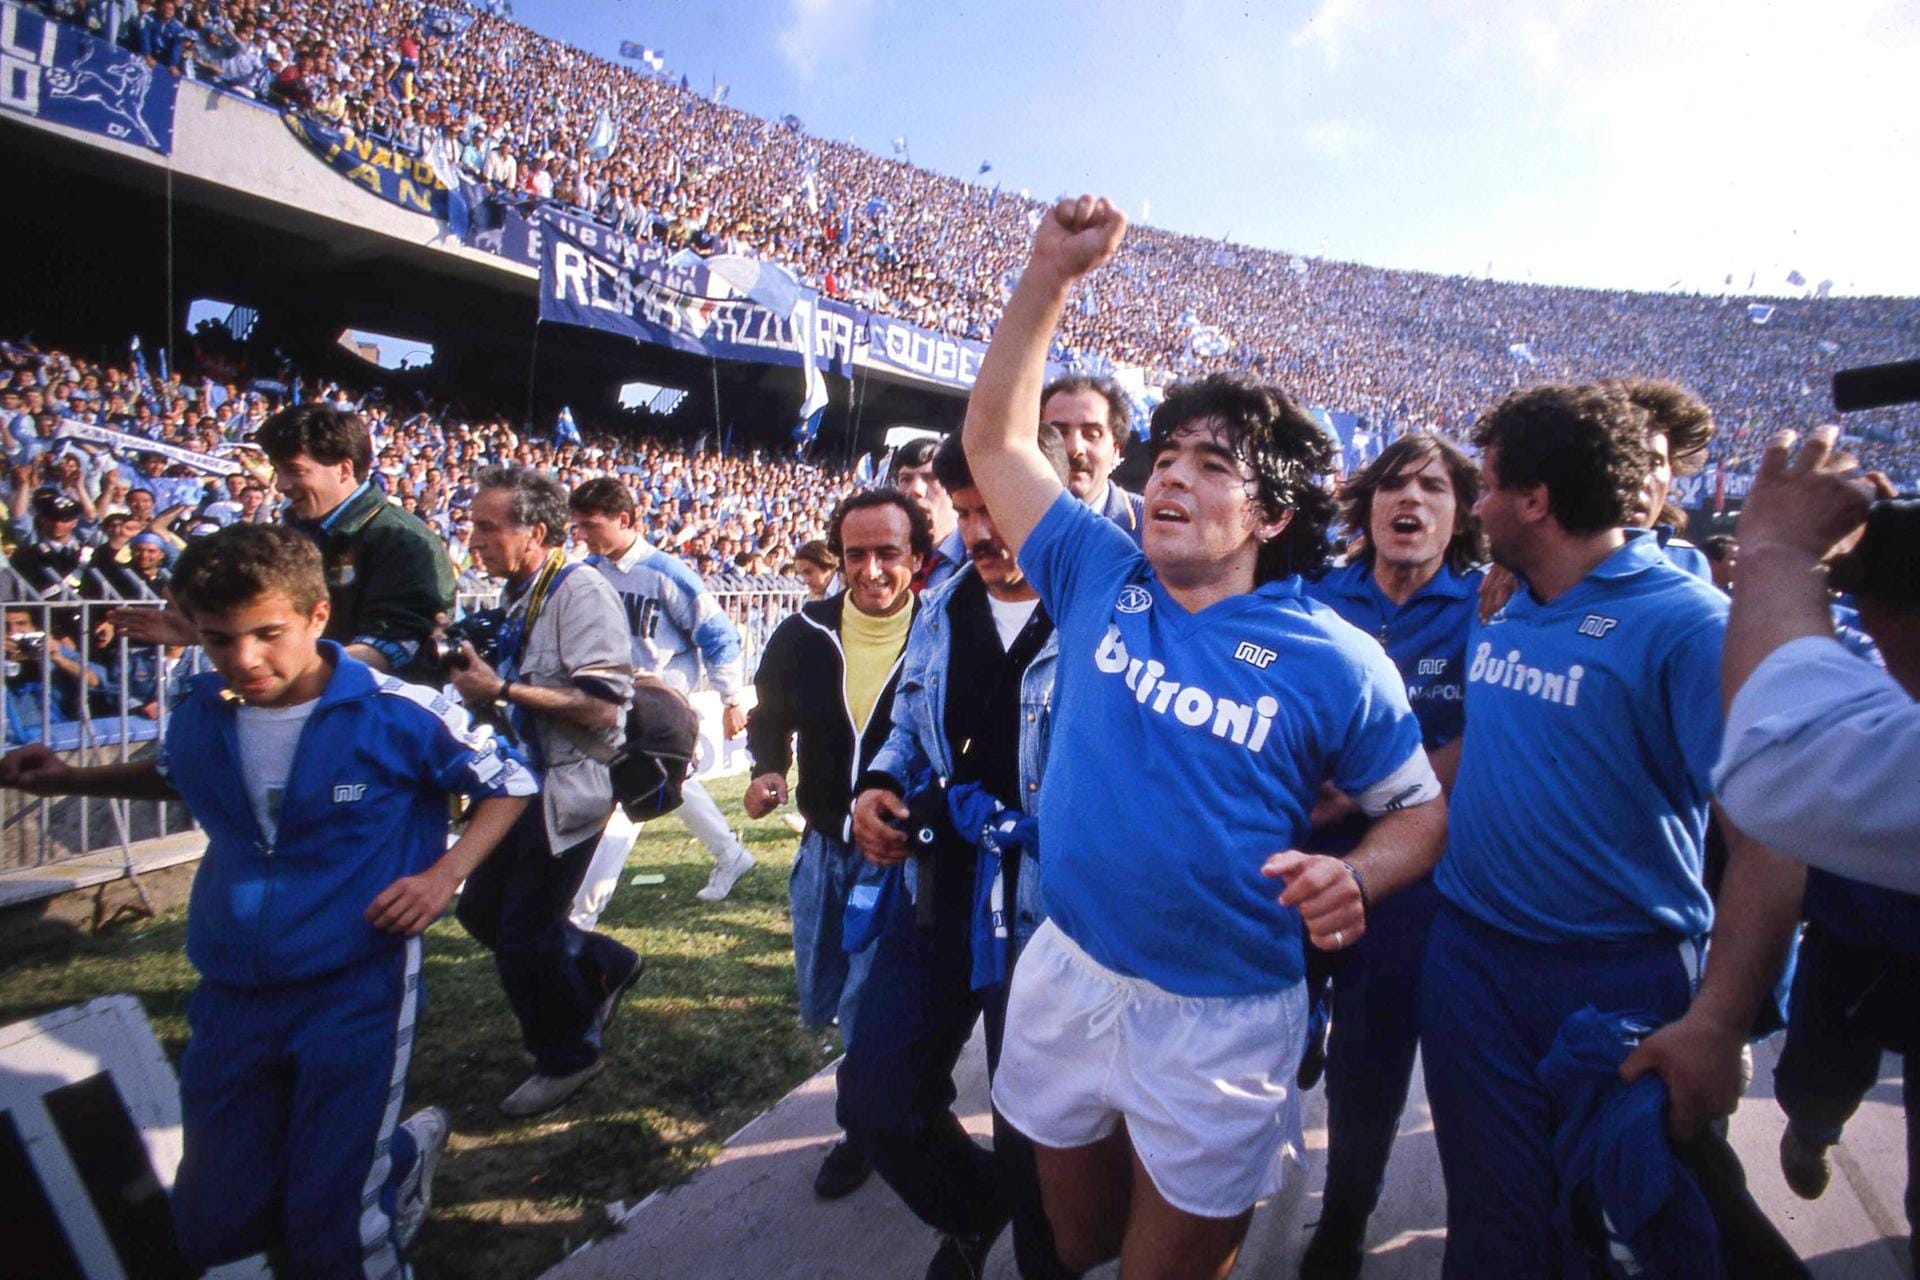 Ein Jahr nach dem WM-Pokal holt er den zweiten Titel, der seine Karriere bis zum heutigen Tag definierte: die italienische Meisterschaft mit seinem Klub SSC Neapel. Es ist der erste "Scudetto", den Napoli gewinnt. Wie bei der WM ist Maradona die überragende Figur. Nach dem Titelgewinn...